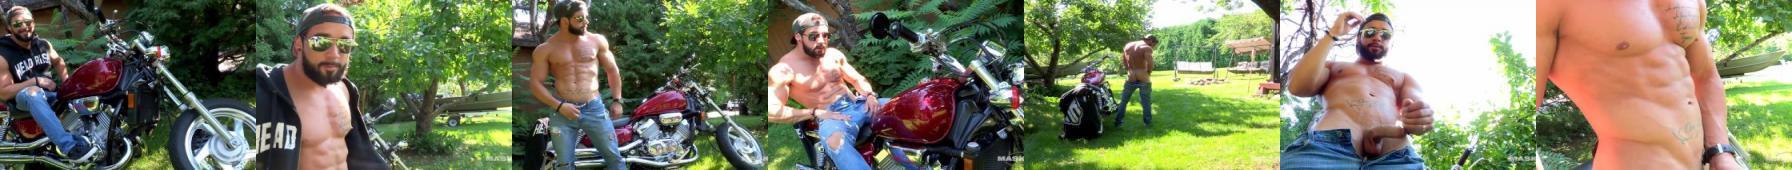 Umięśniony, przystojny motocyklista masturbuje się przy swojej maszynie